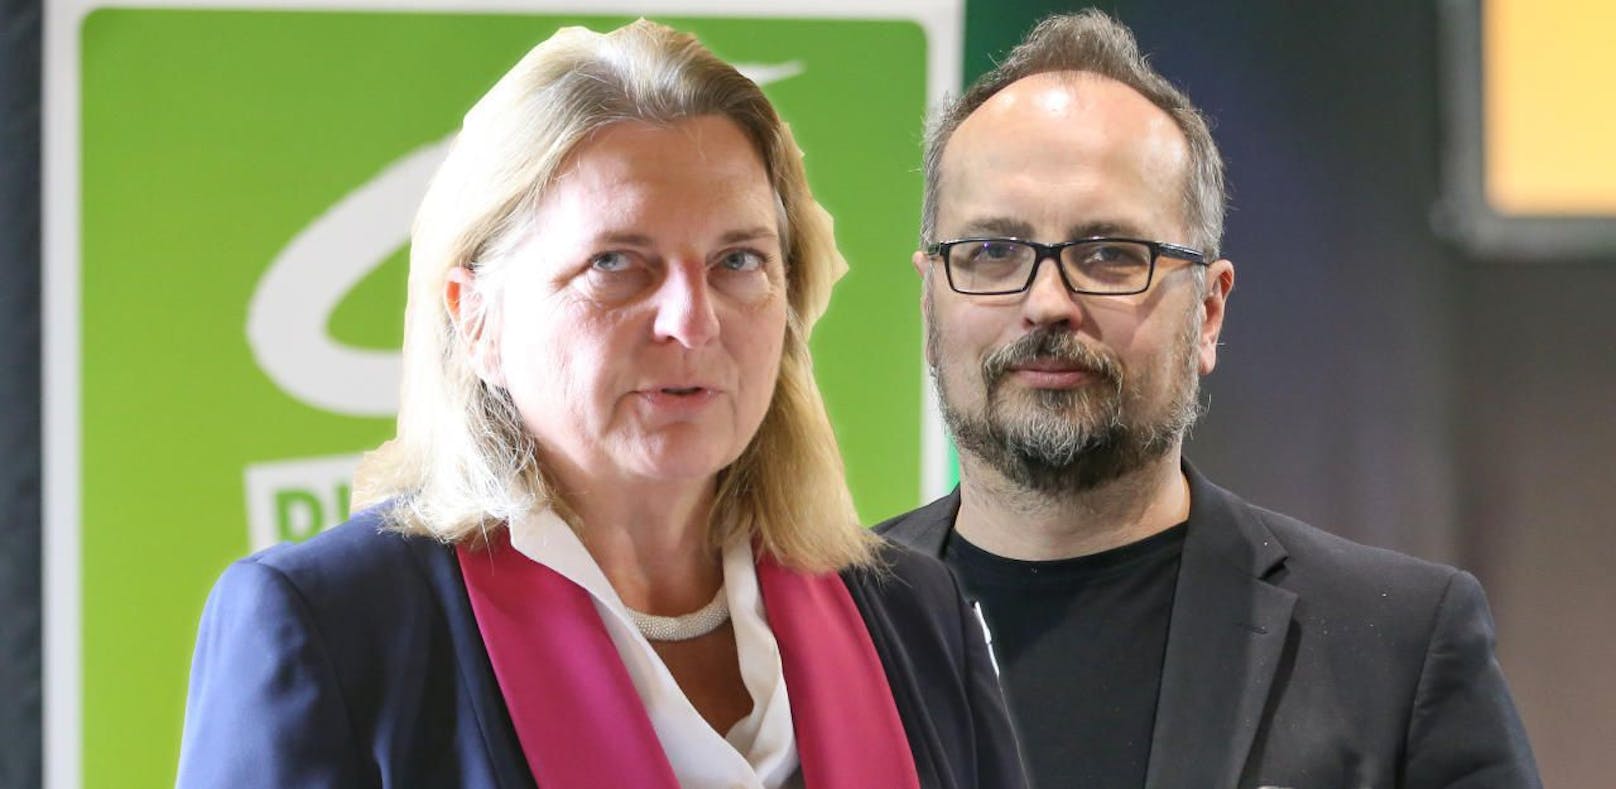 Michel Reimon fordert den Rücktritt von Außenministerin Karin Kneissl.